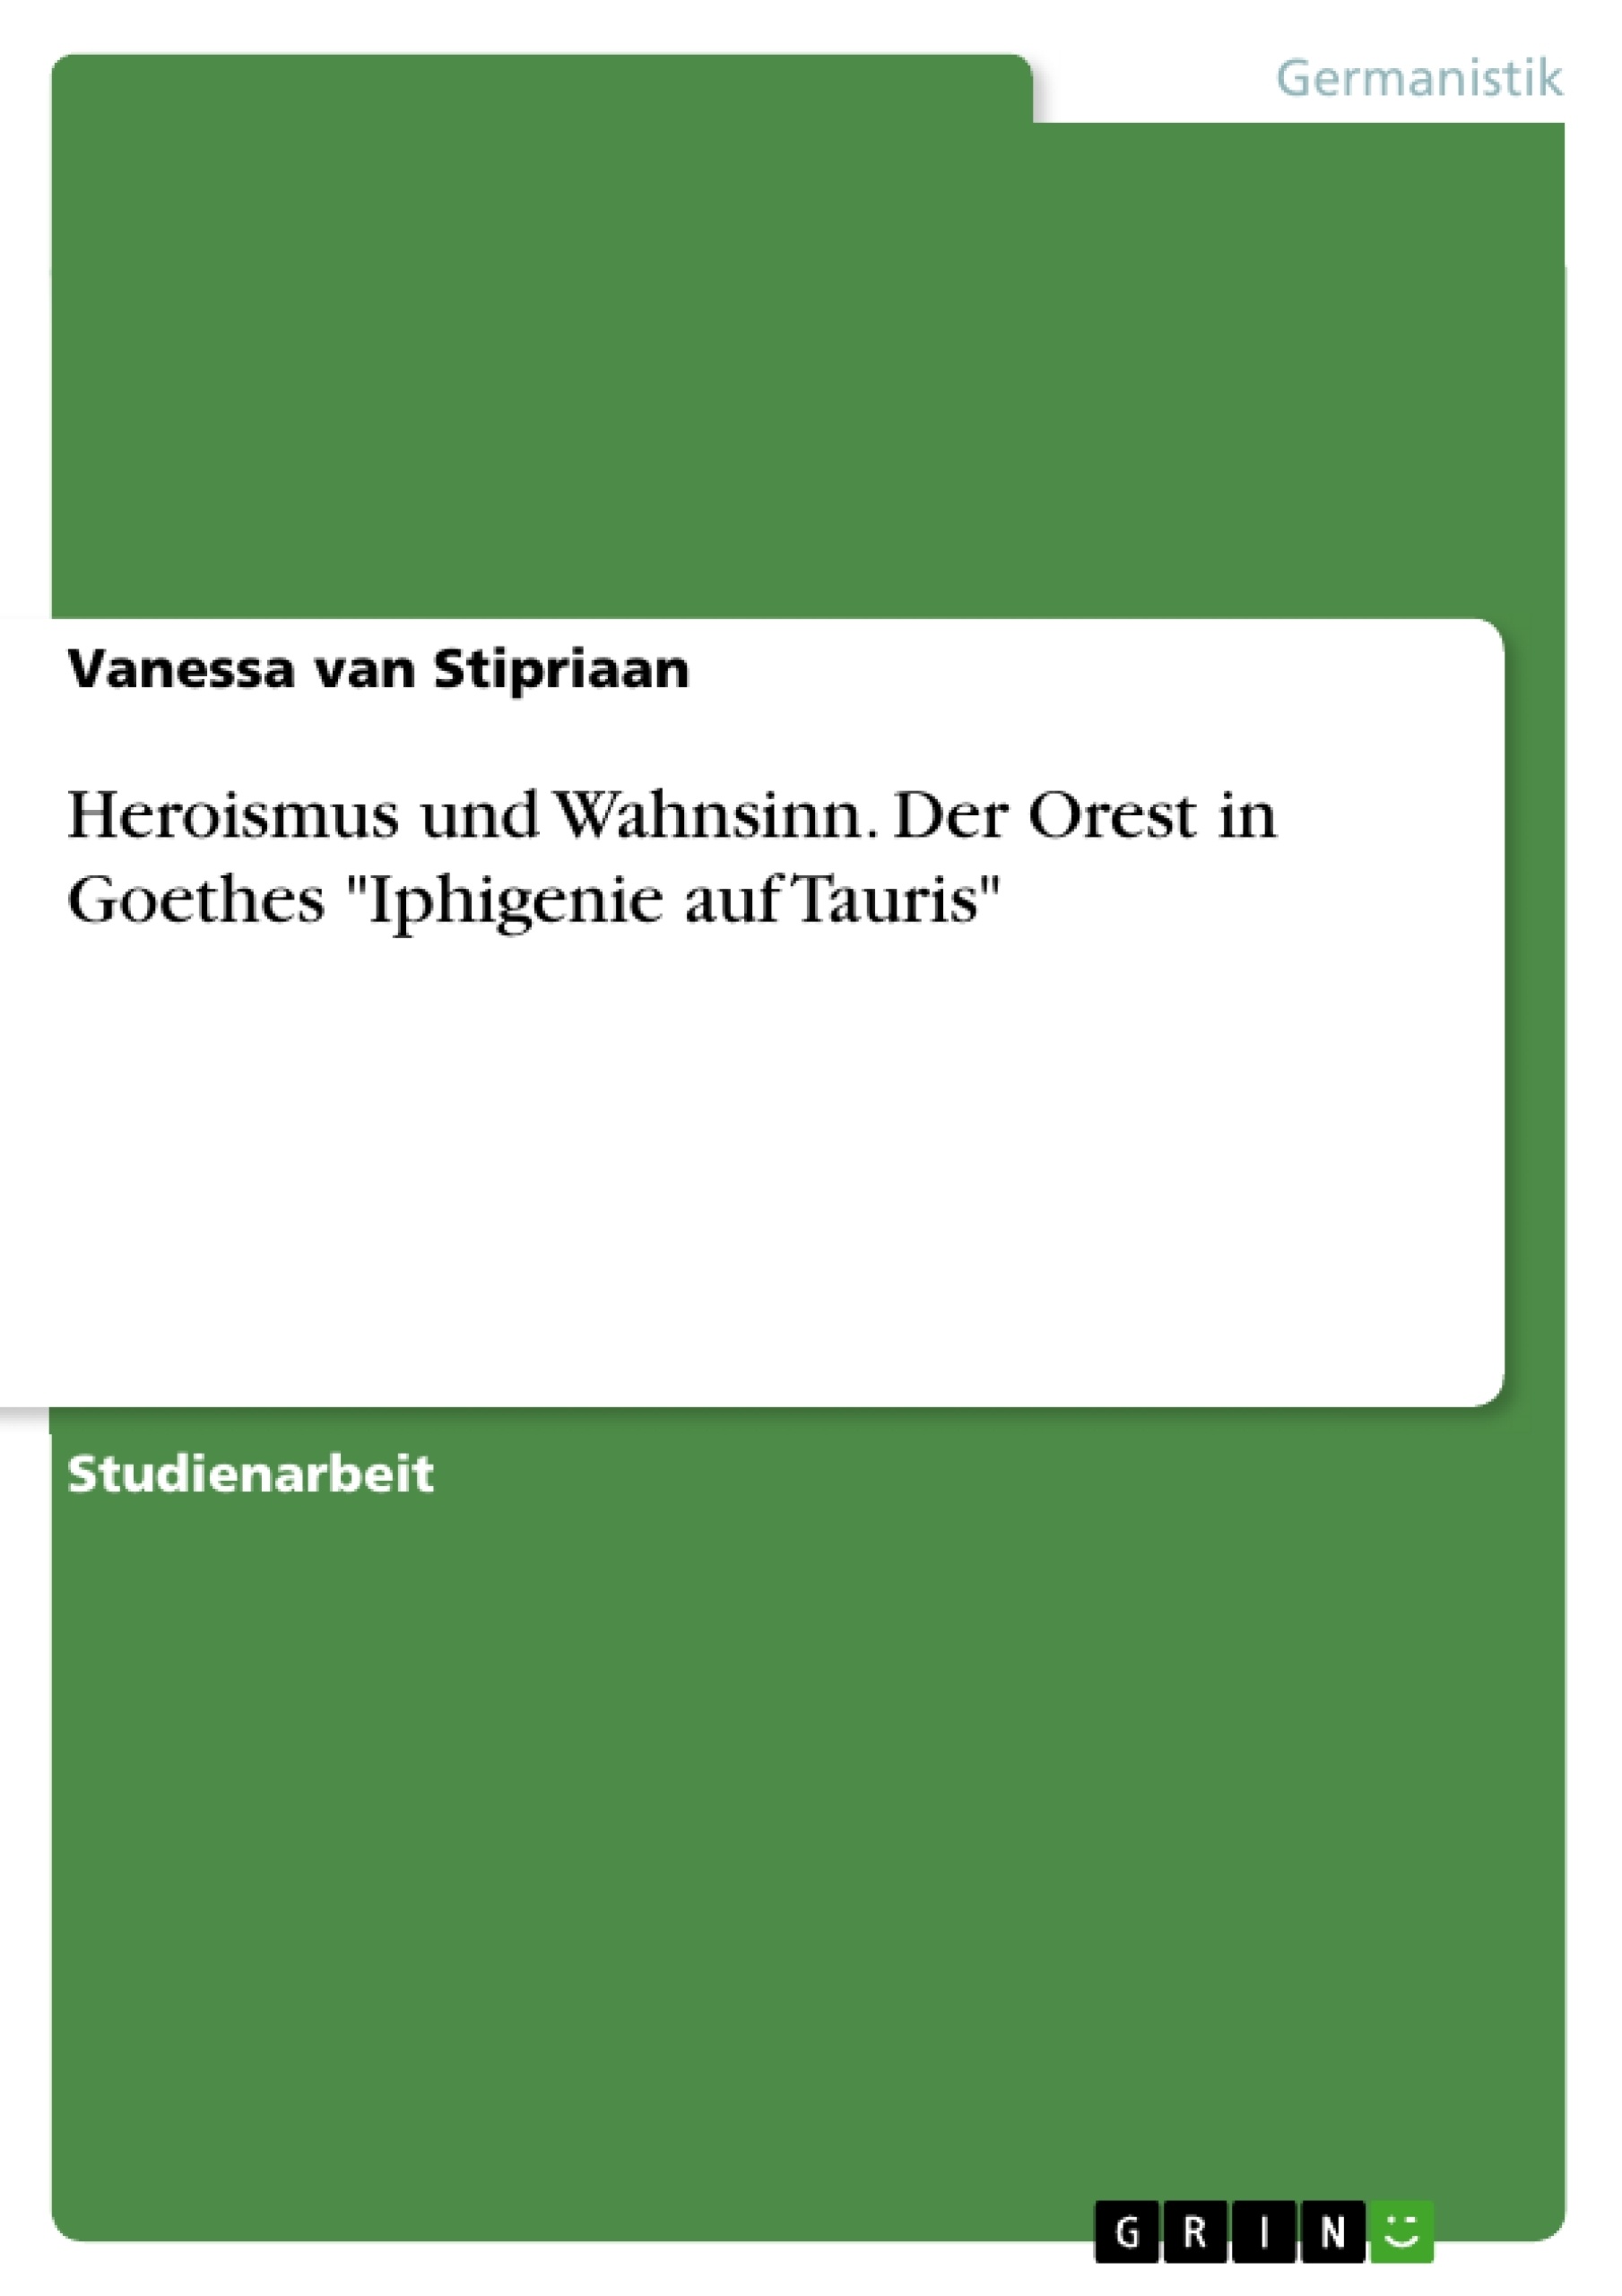 Title: Heroismus und Wahnsinn. Der Orest in Goethes "Iphigenie auf Tauris"